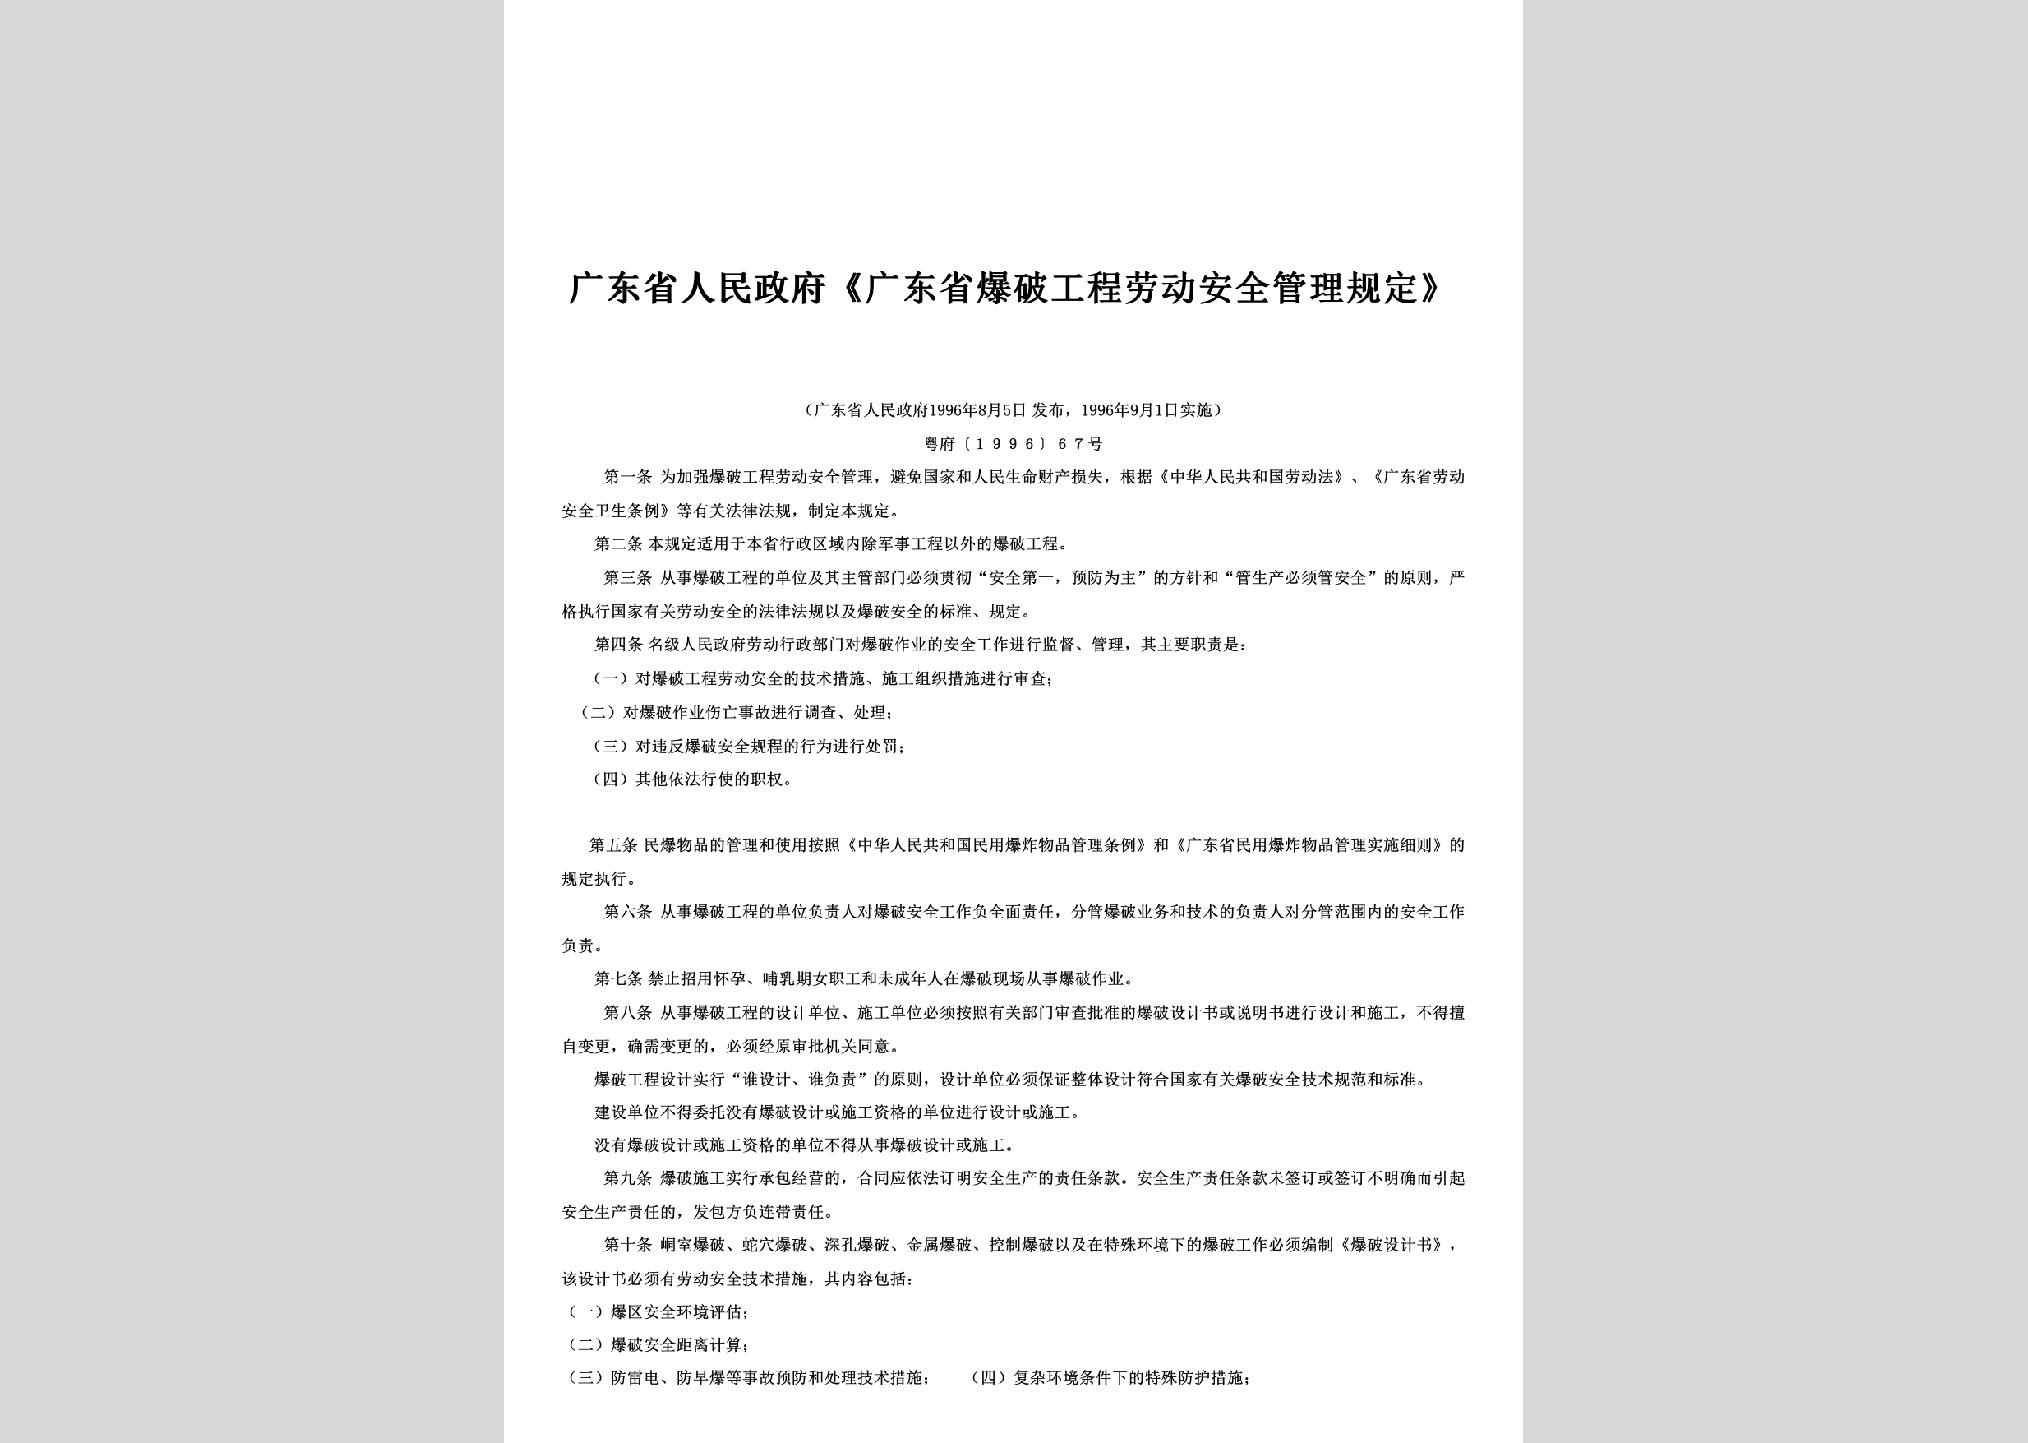 粤府[1996]67号：《广东省爆破工程劳动安全管理规定》